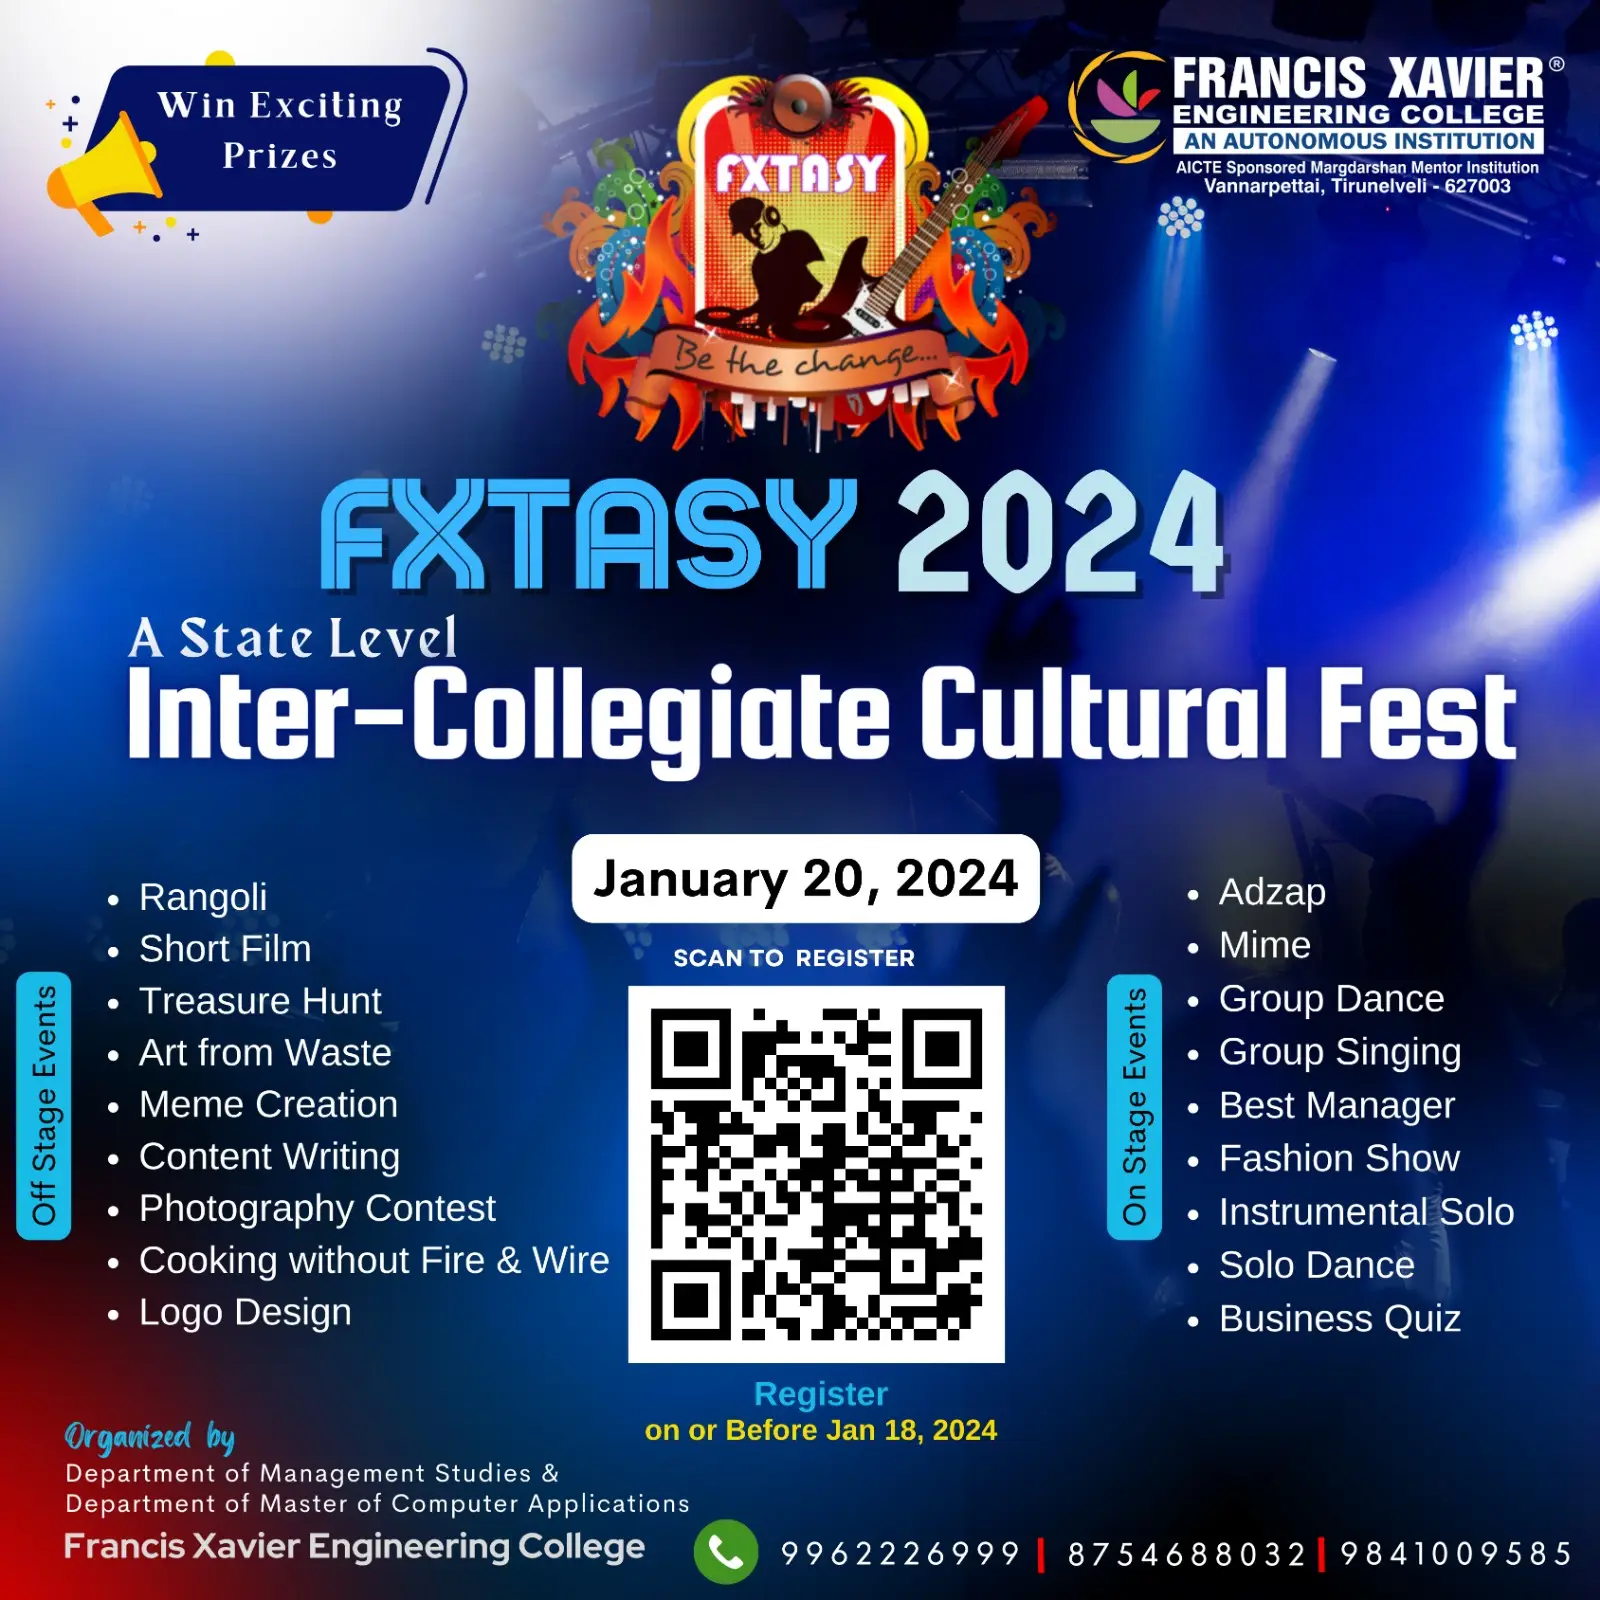 FXTASY 2024 - Inter-Collegiate Cultural Fest